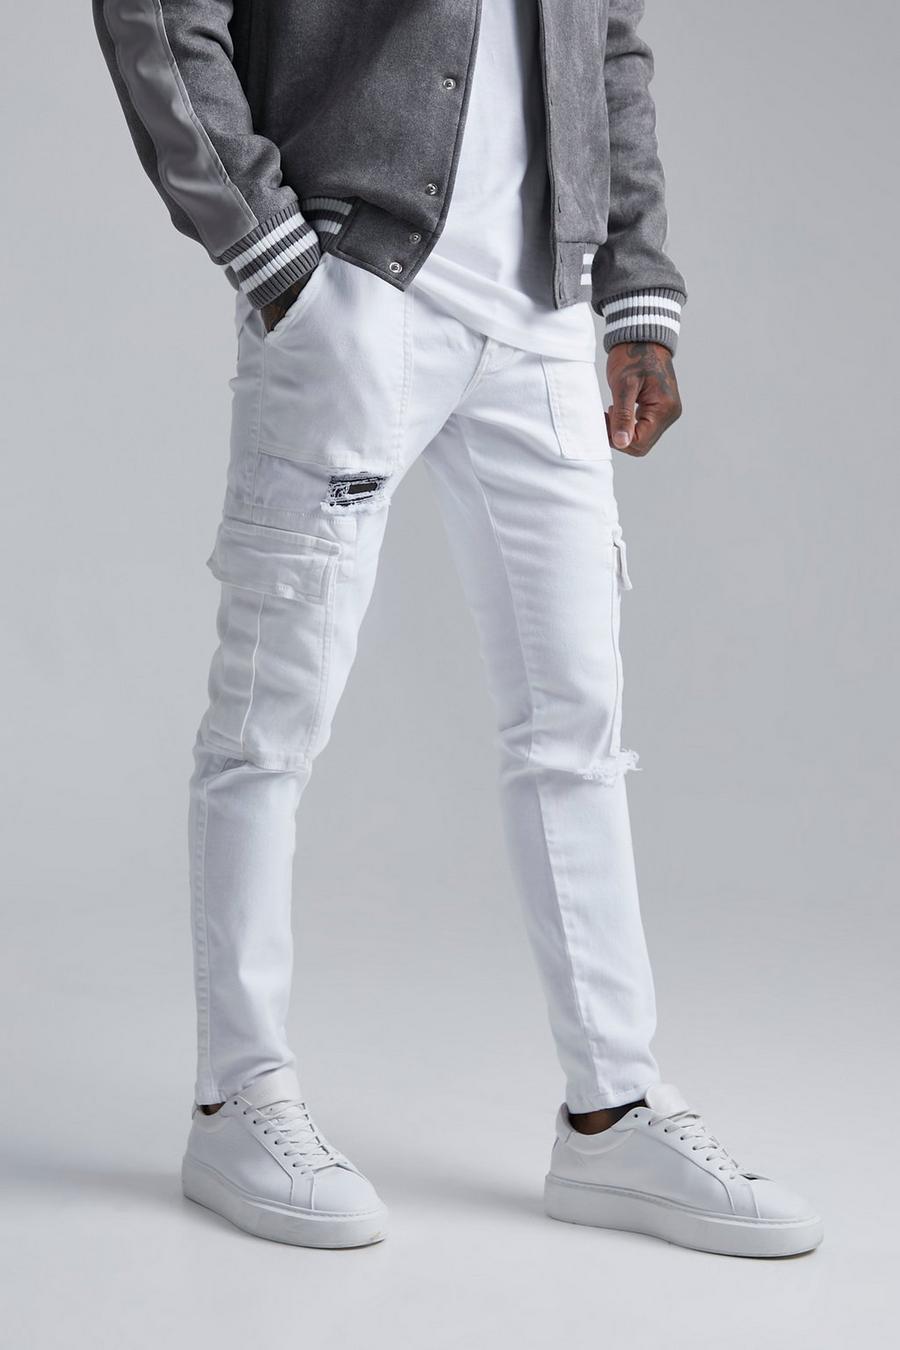 Jeans Cargo Skinny Fit in Stretch effetto smagliato, White blanco